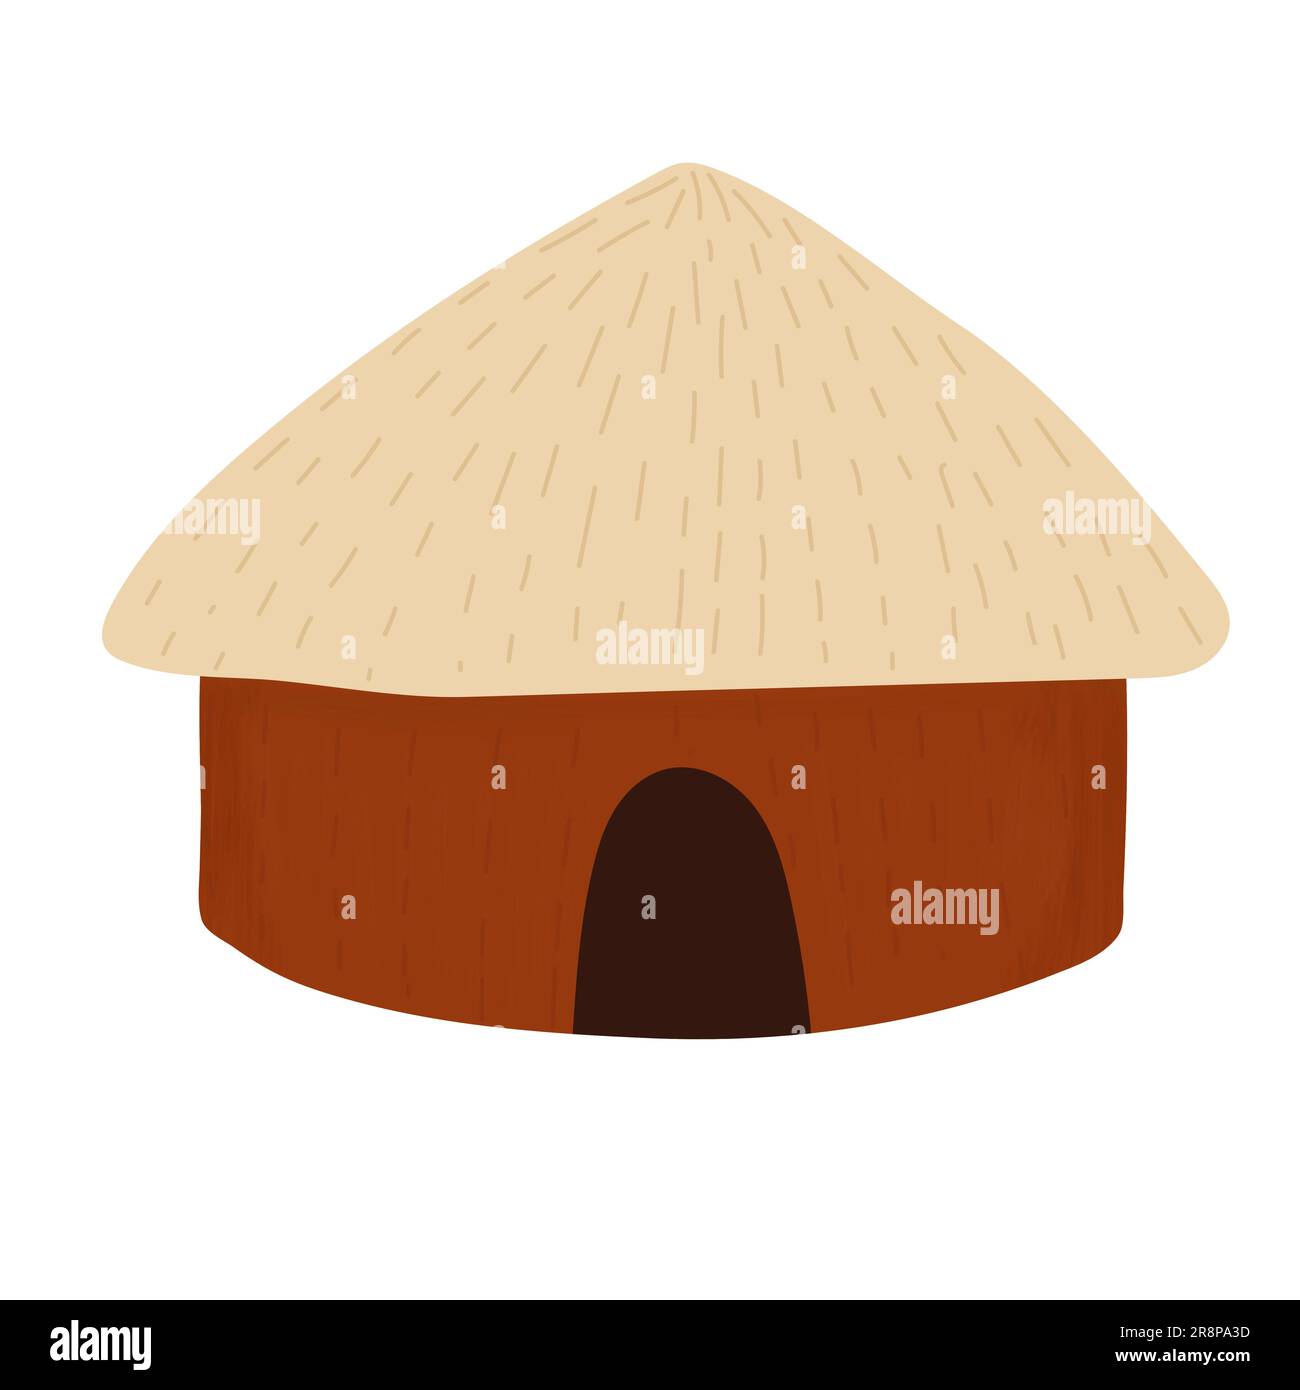 Afrikanisches Haus mit Strohdach isoliert auf weißem Hintergrund. Hellbraune Tonwände. Handgezeichneter Zeichentrickfilm mit kleinem Eingang und großem Dach. Stock Vektor